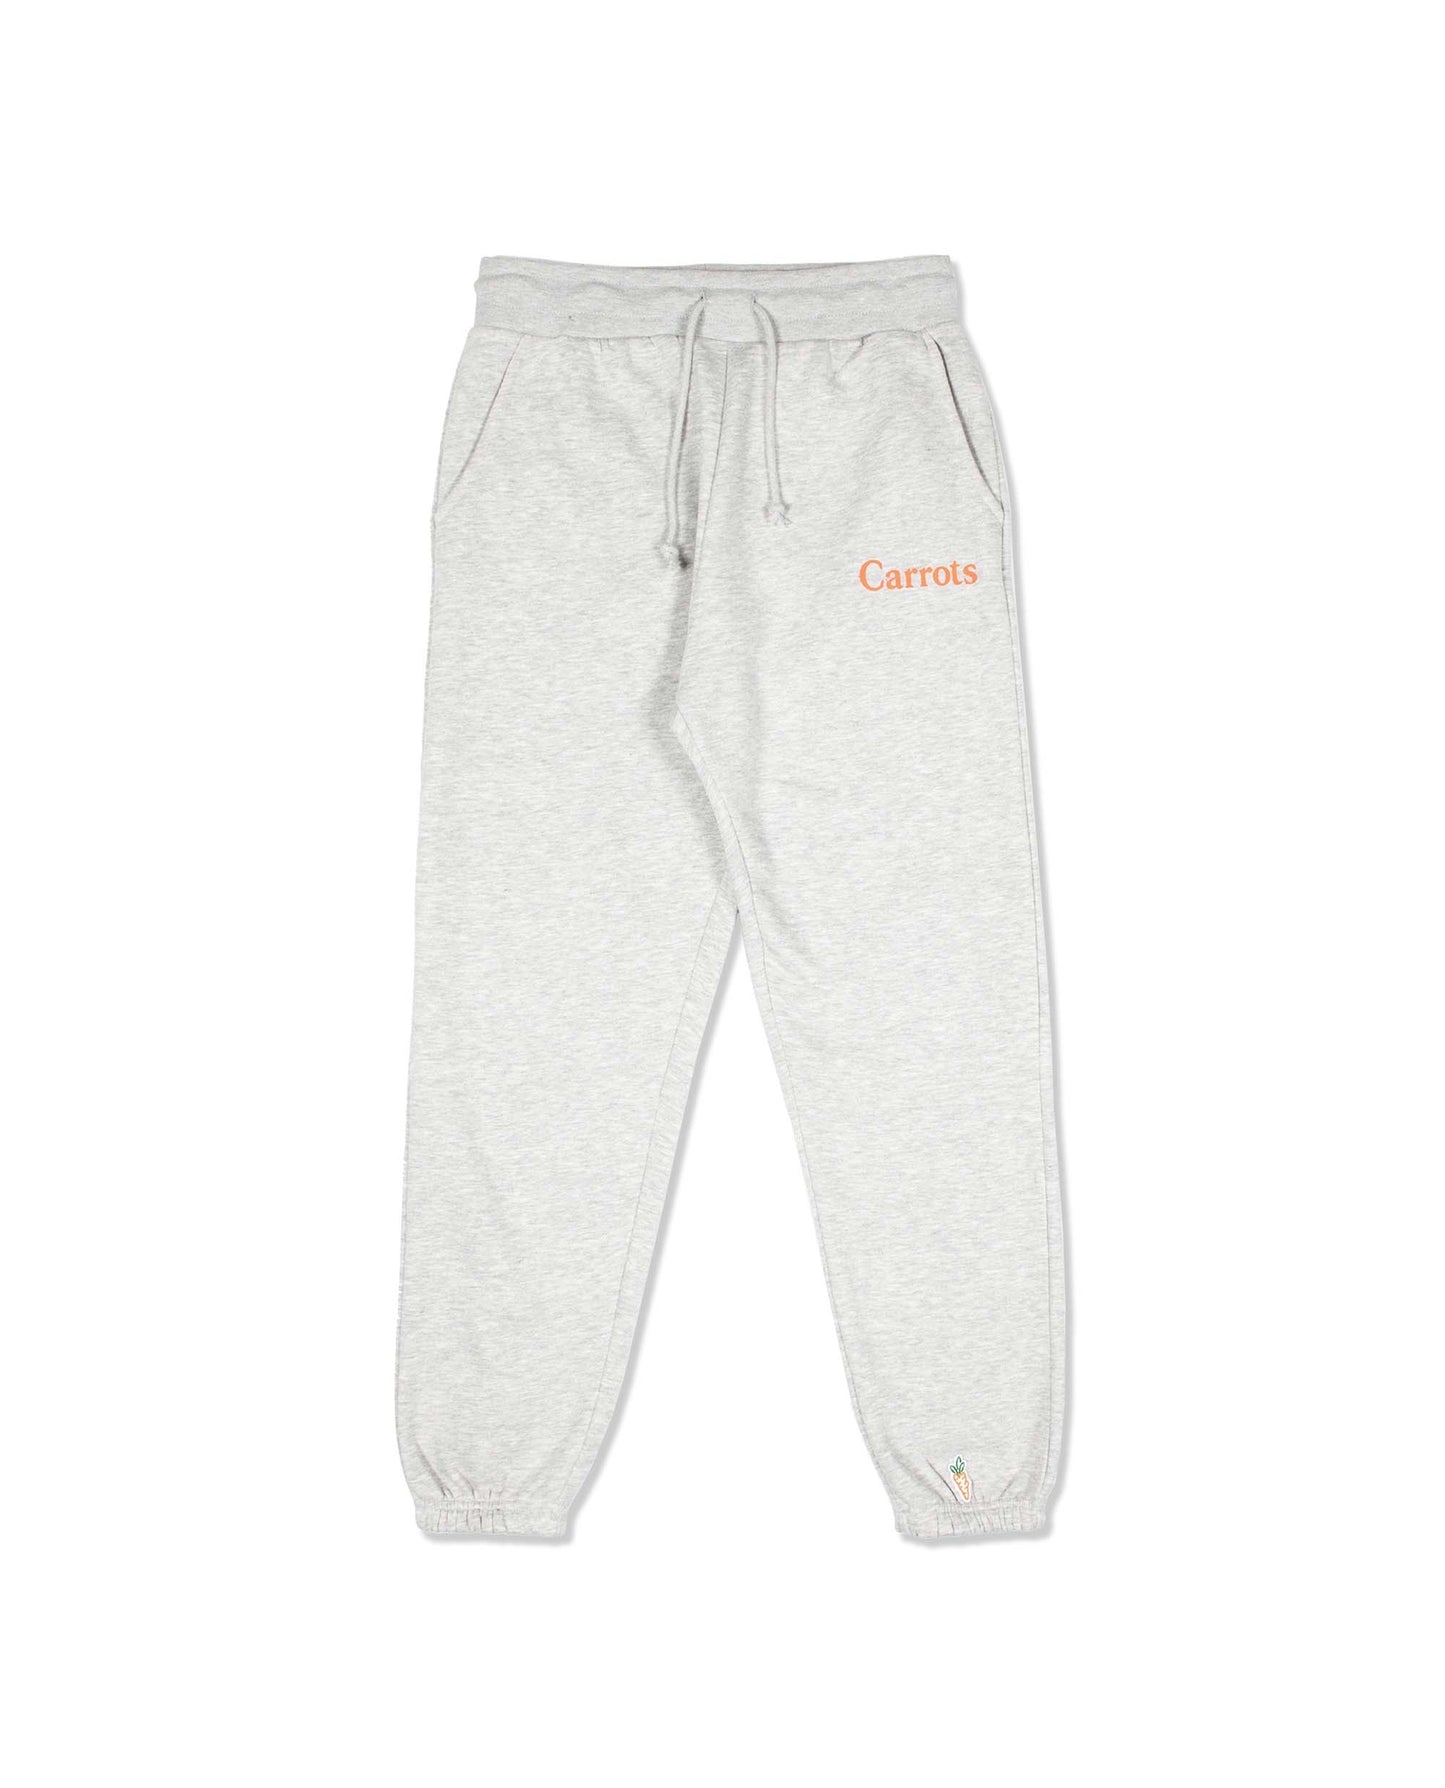 
                    
                      Carrots Wordmark Sweatpants Grey
                    
                  